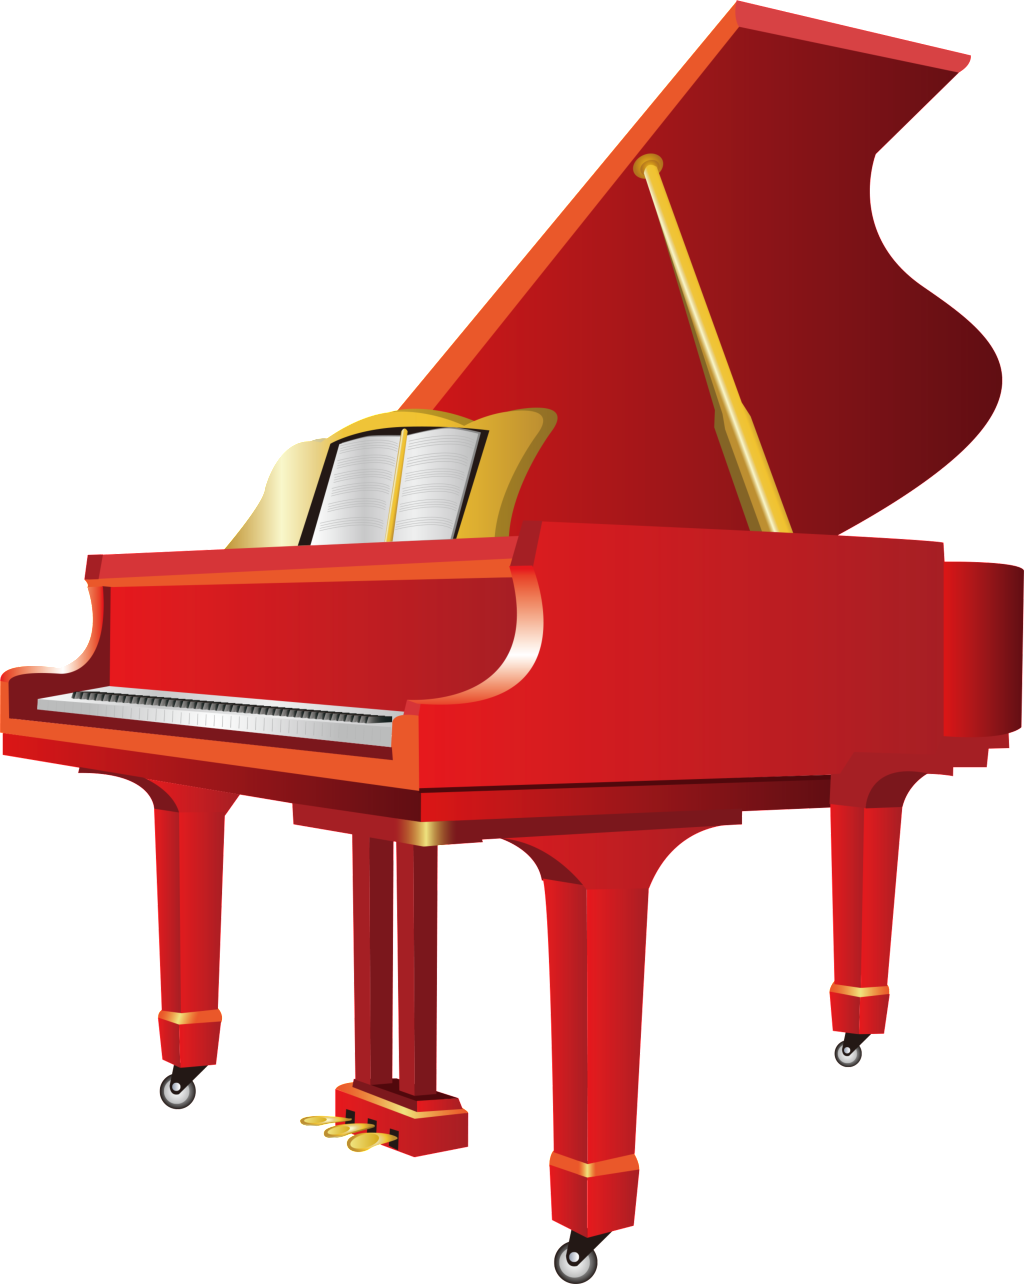 576 5764085 design about piano music piano elements piano vector